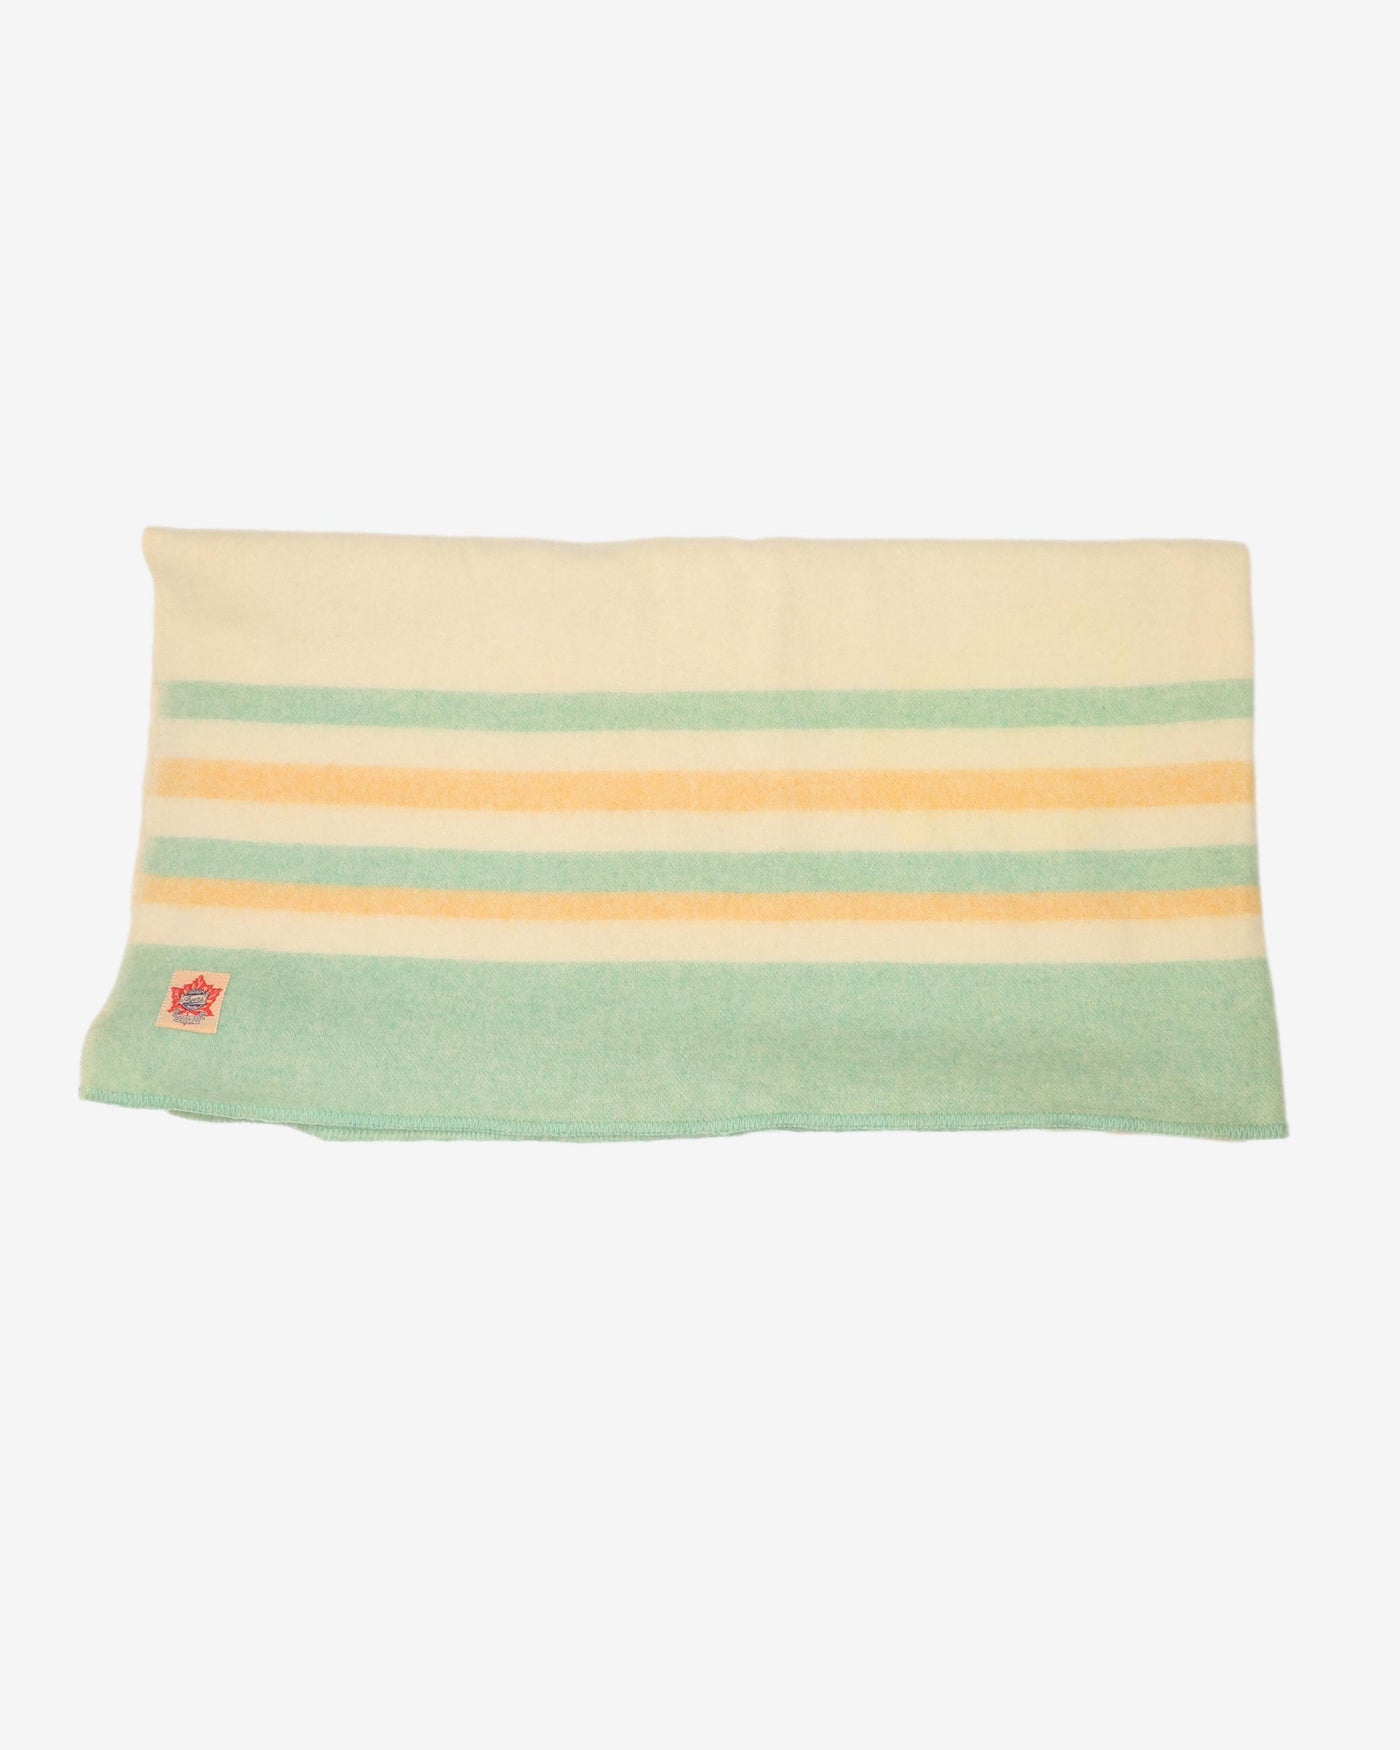 1940s Ayers Wool Blanket